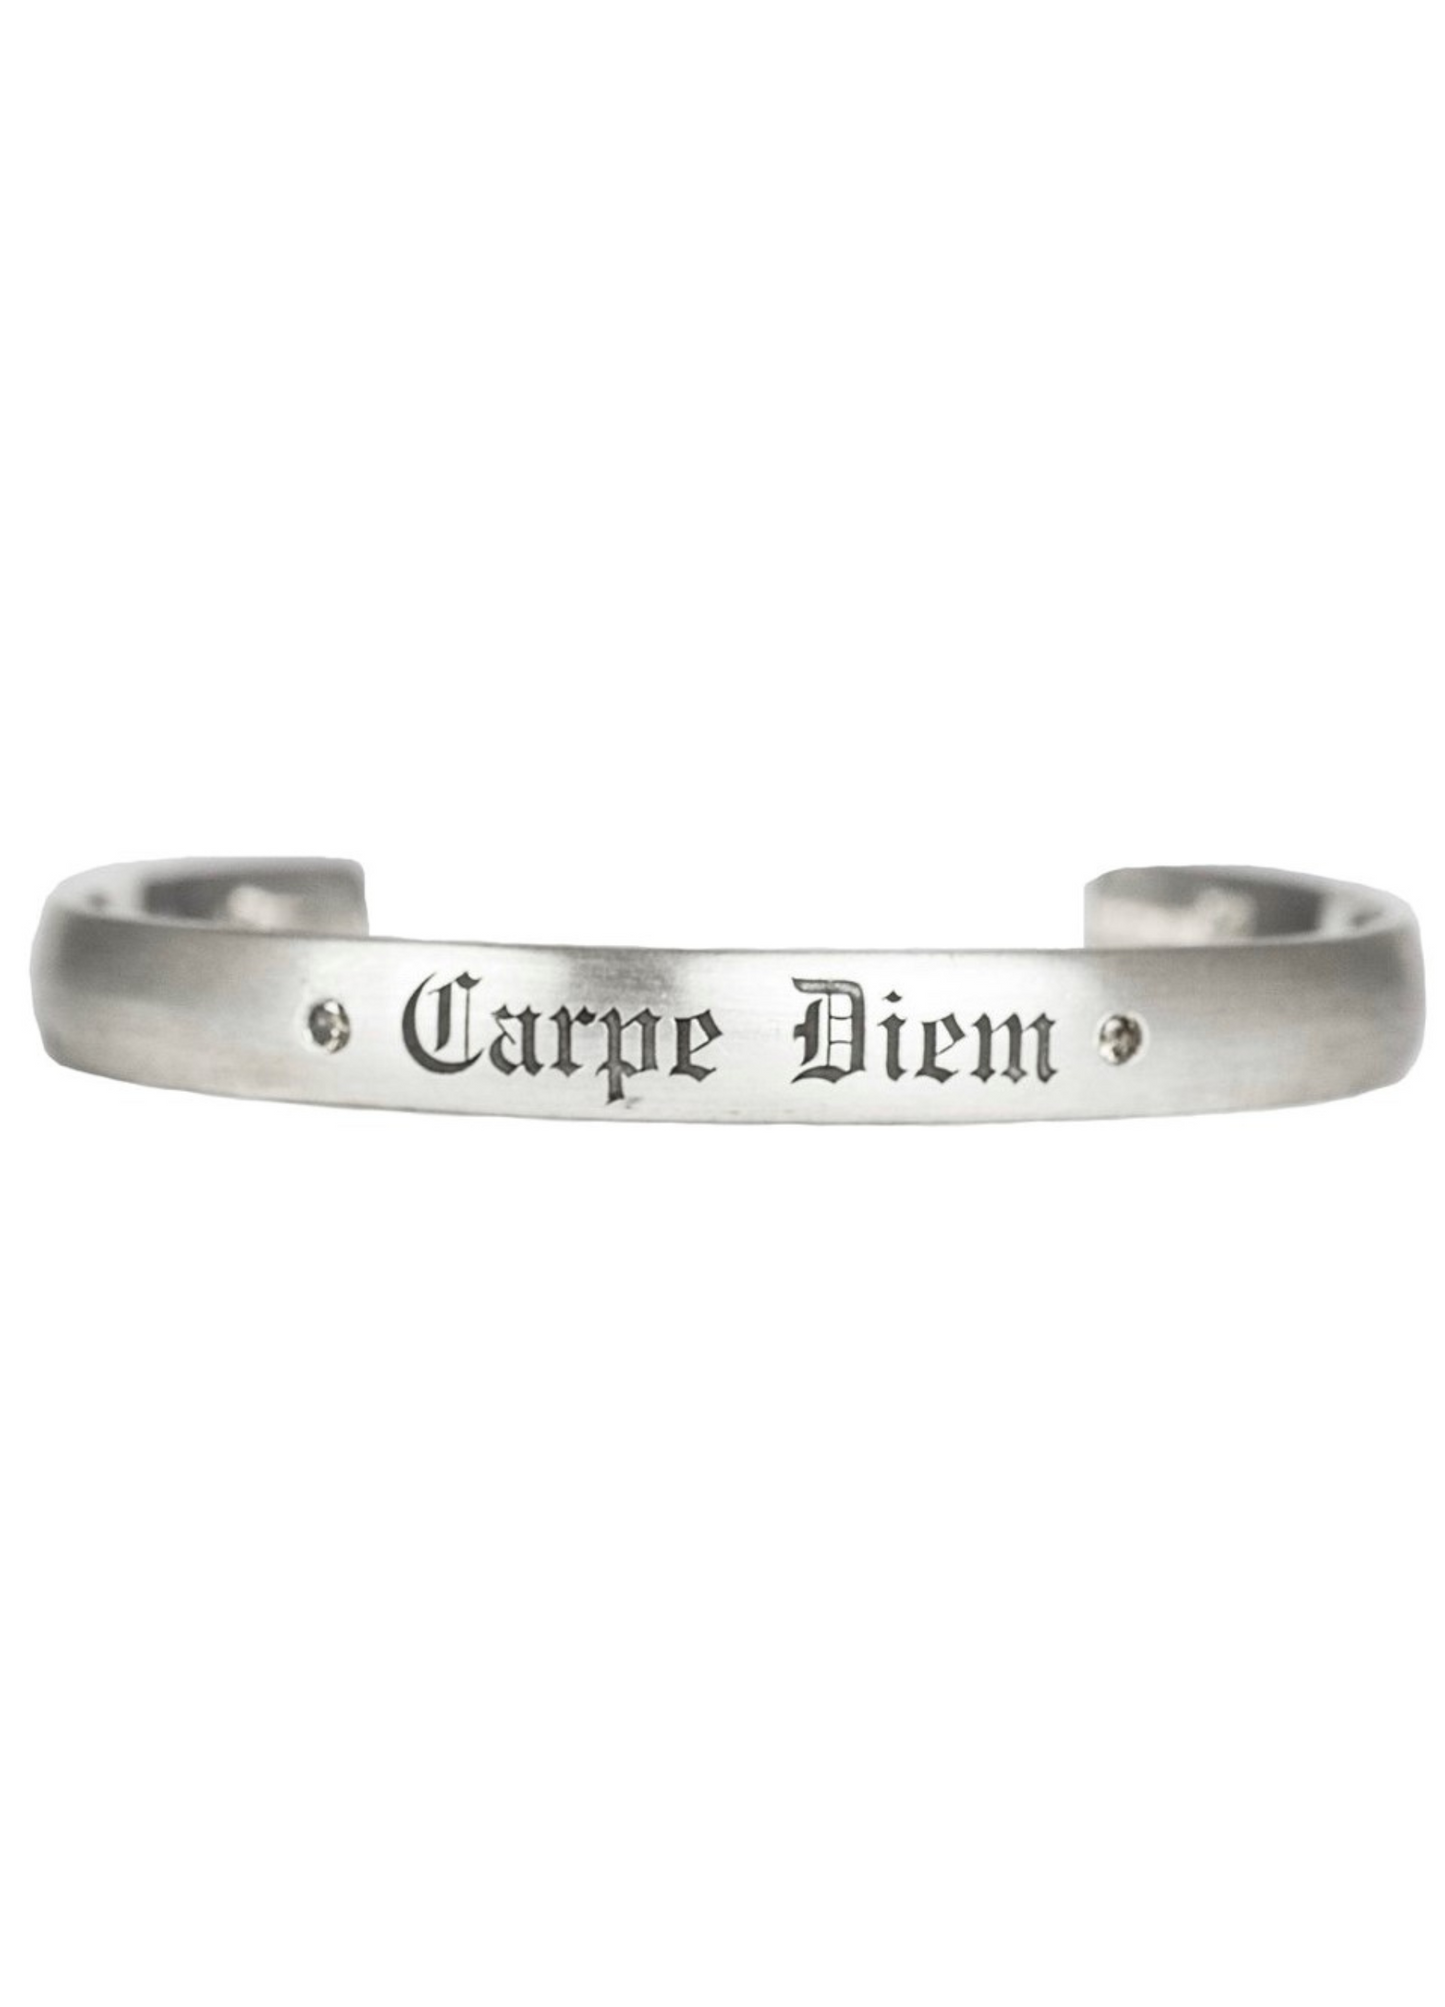 Carpe Diem Cuff Bracelet